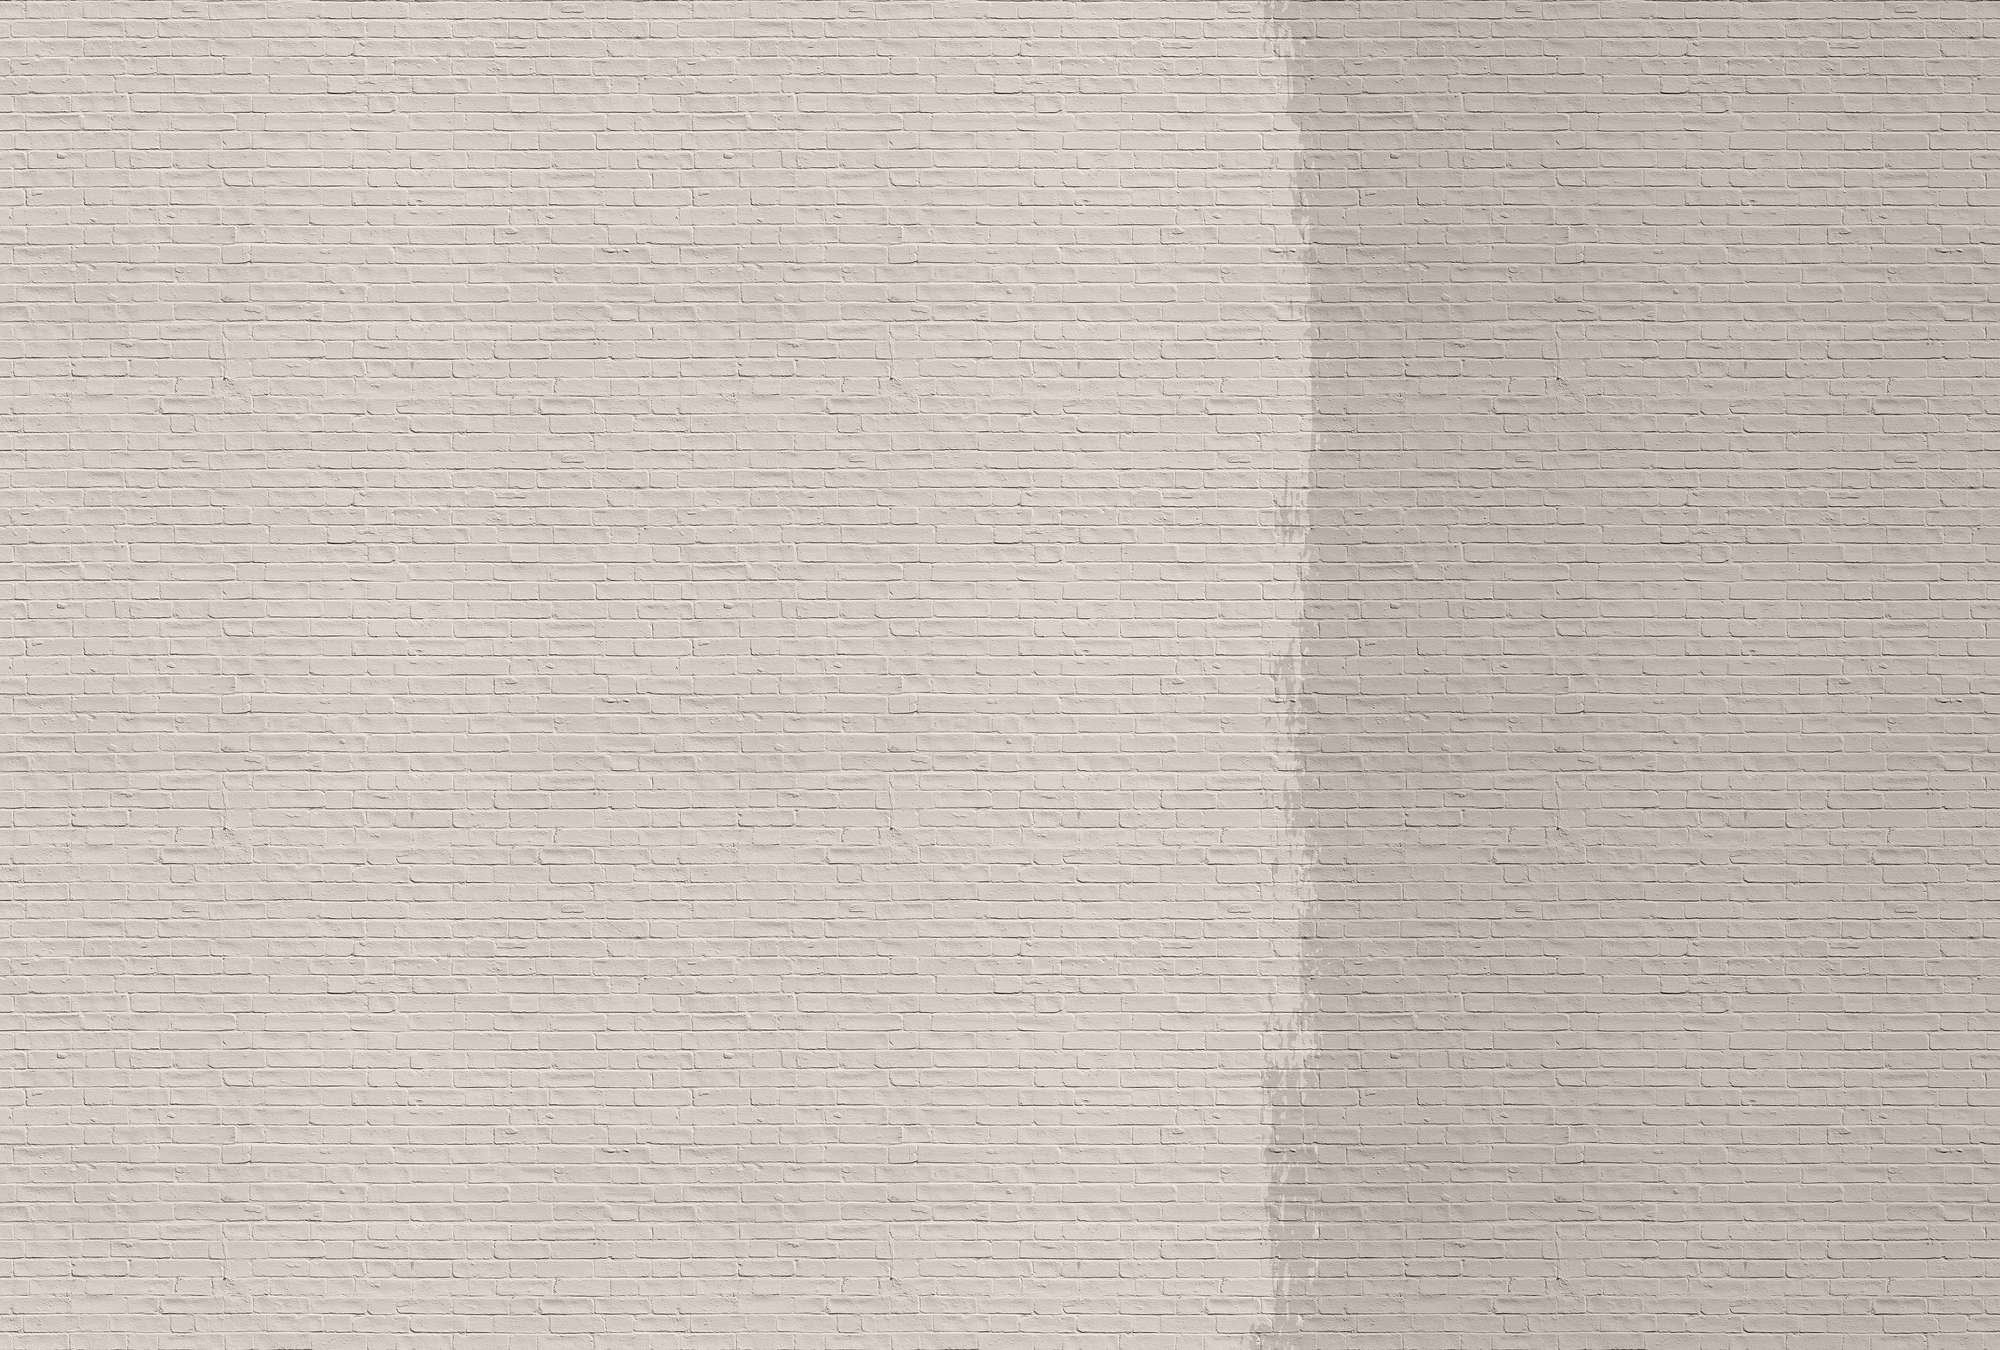             Tainted love 1 - Papier peint mur de briques peint - beige, taupe | Intissé lisse mat
        